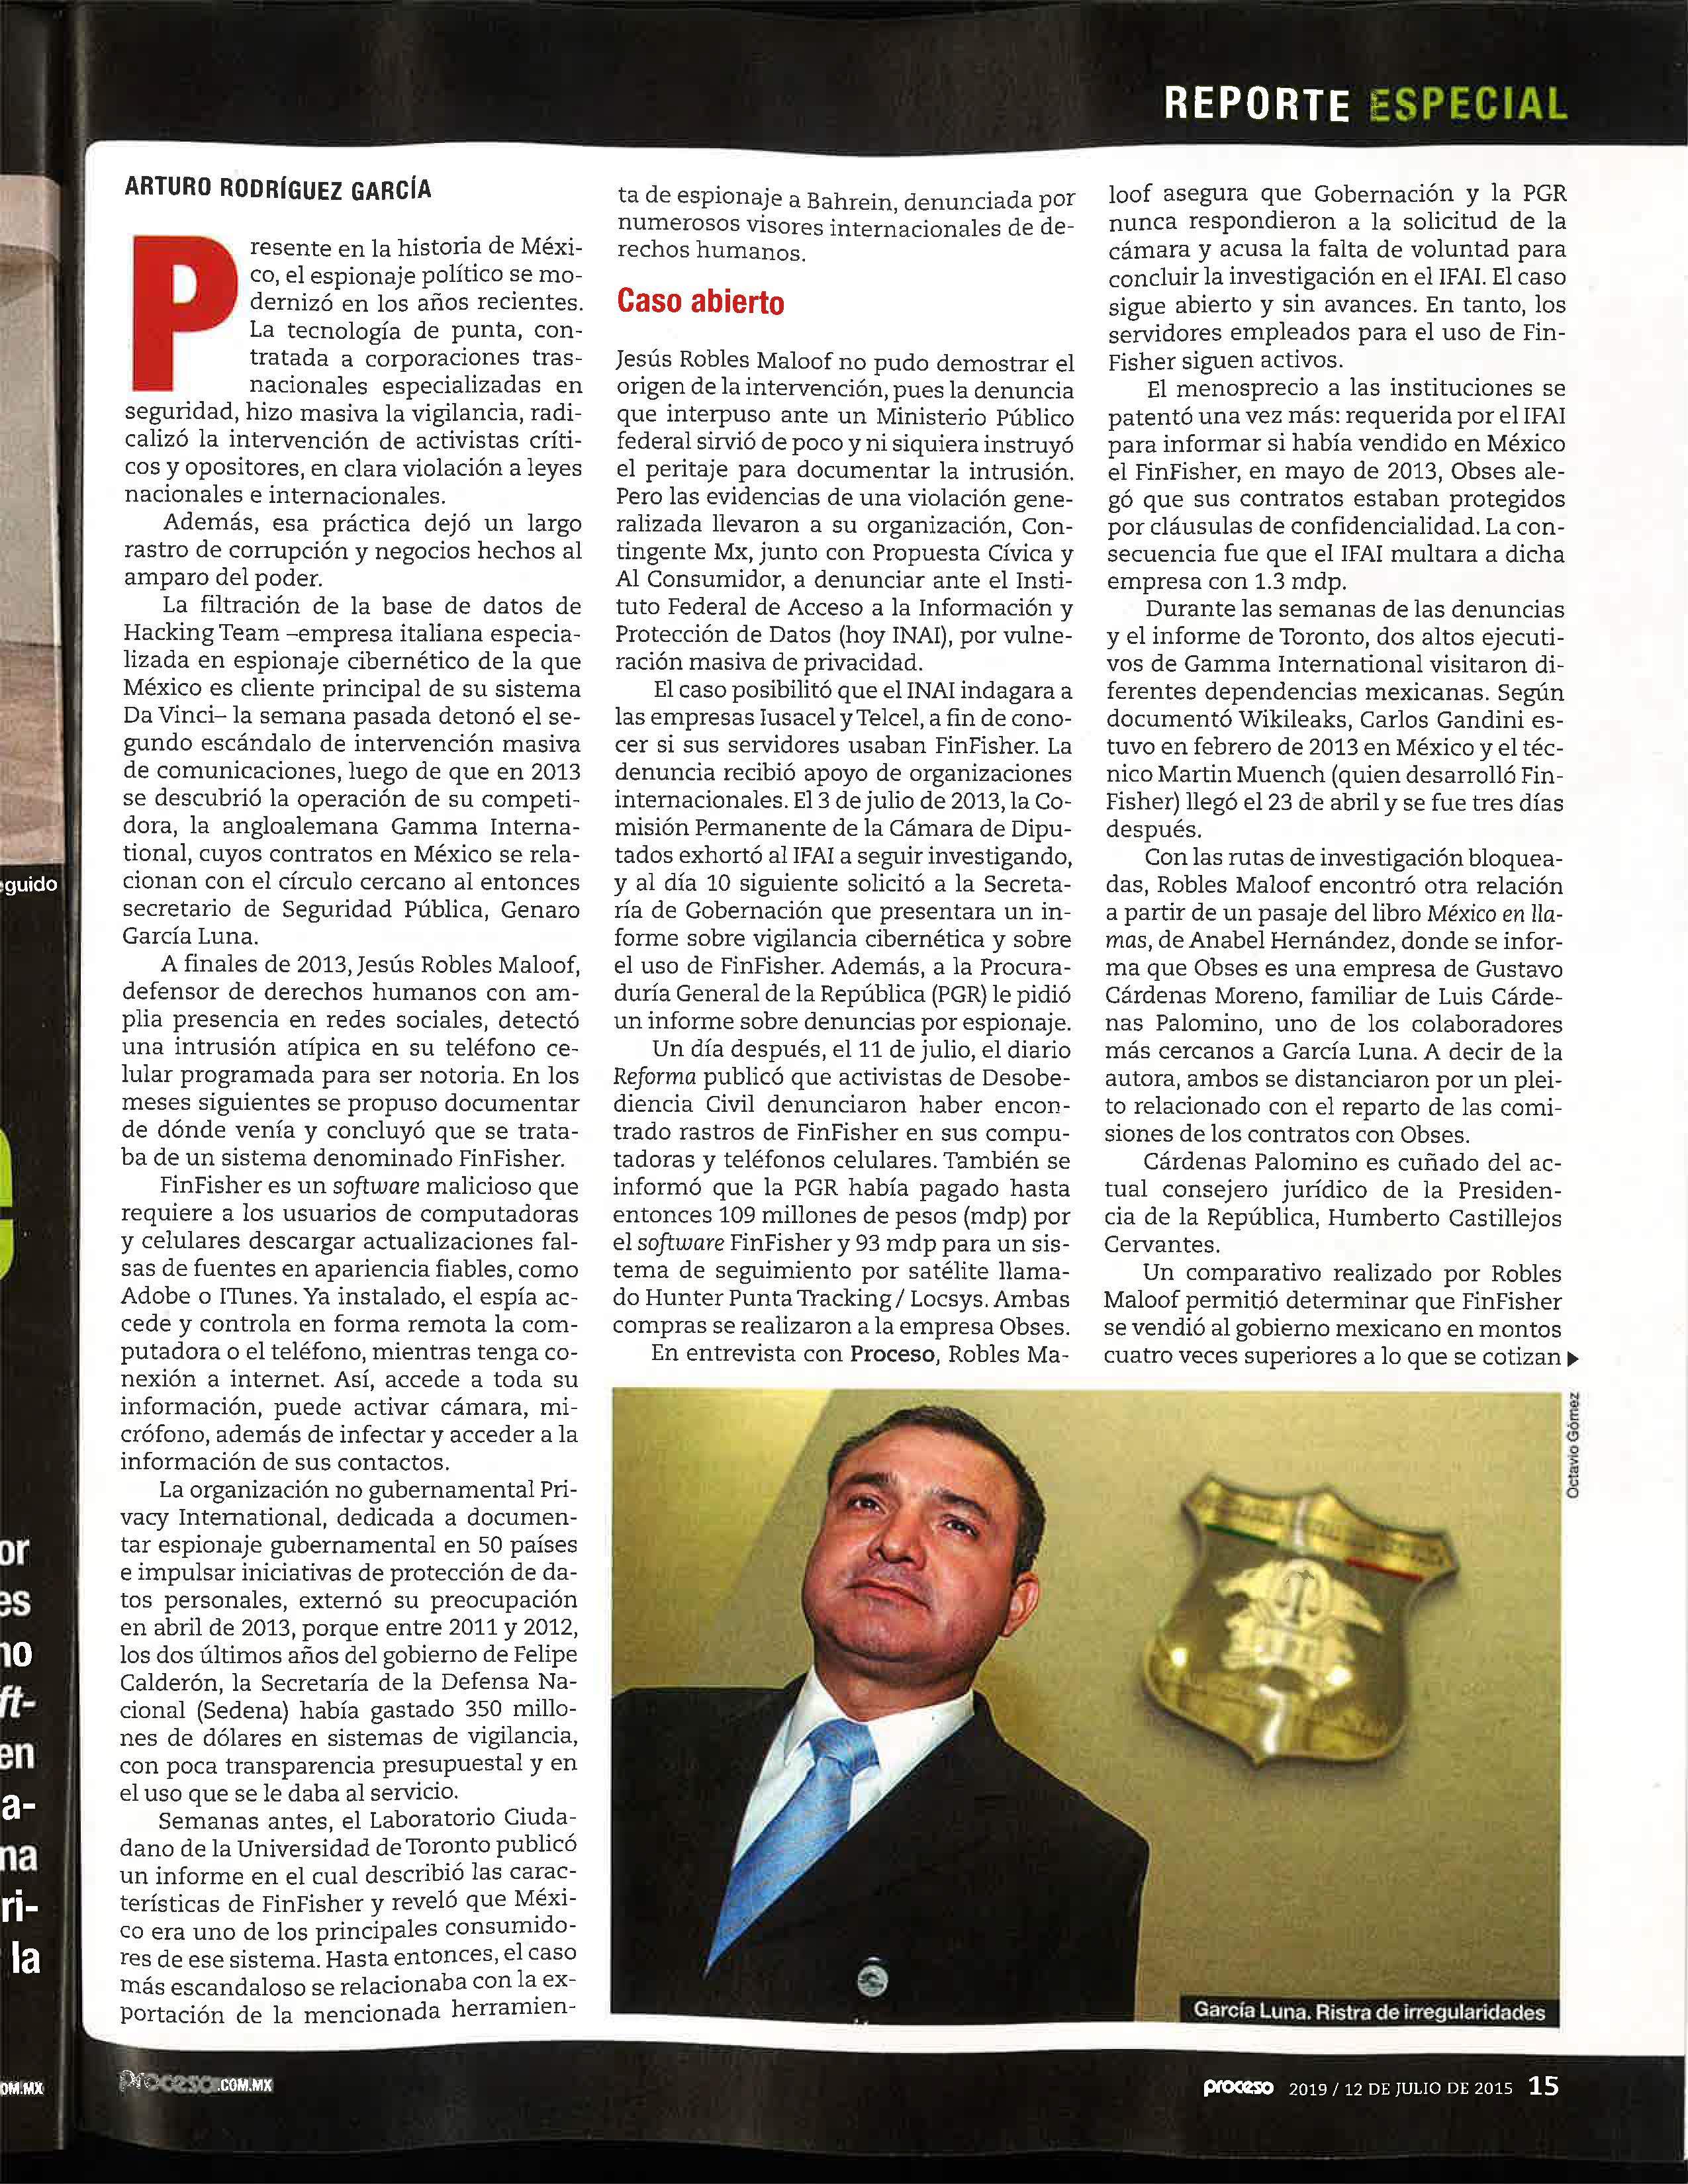 Revista Proceso, Espionaje p15